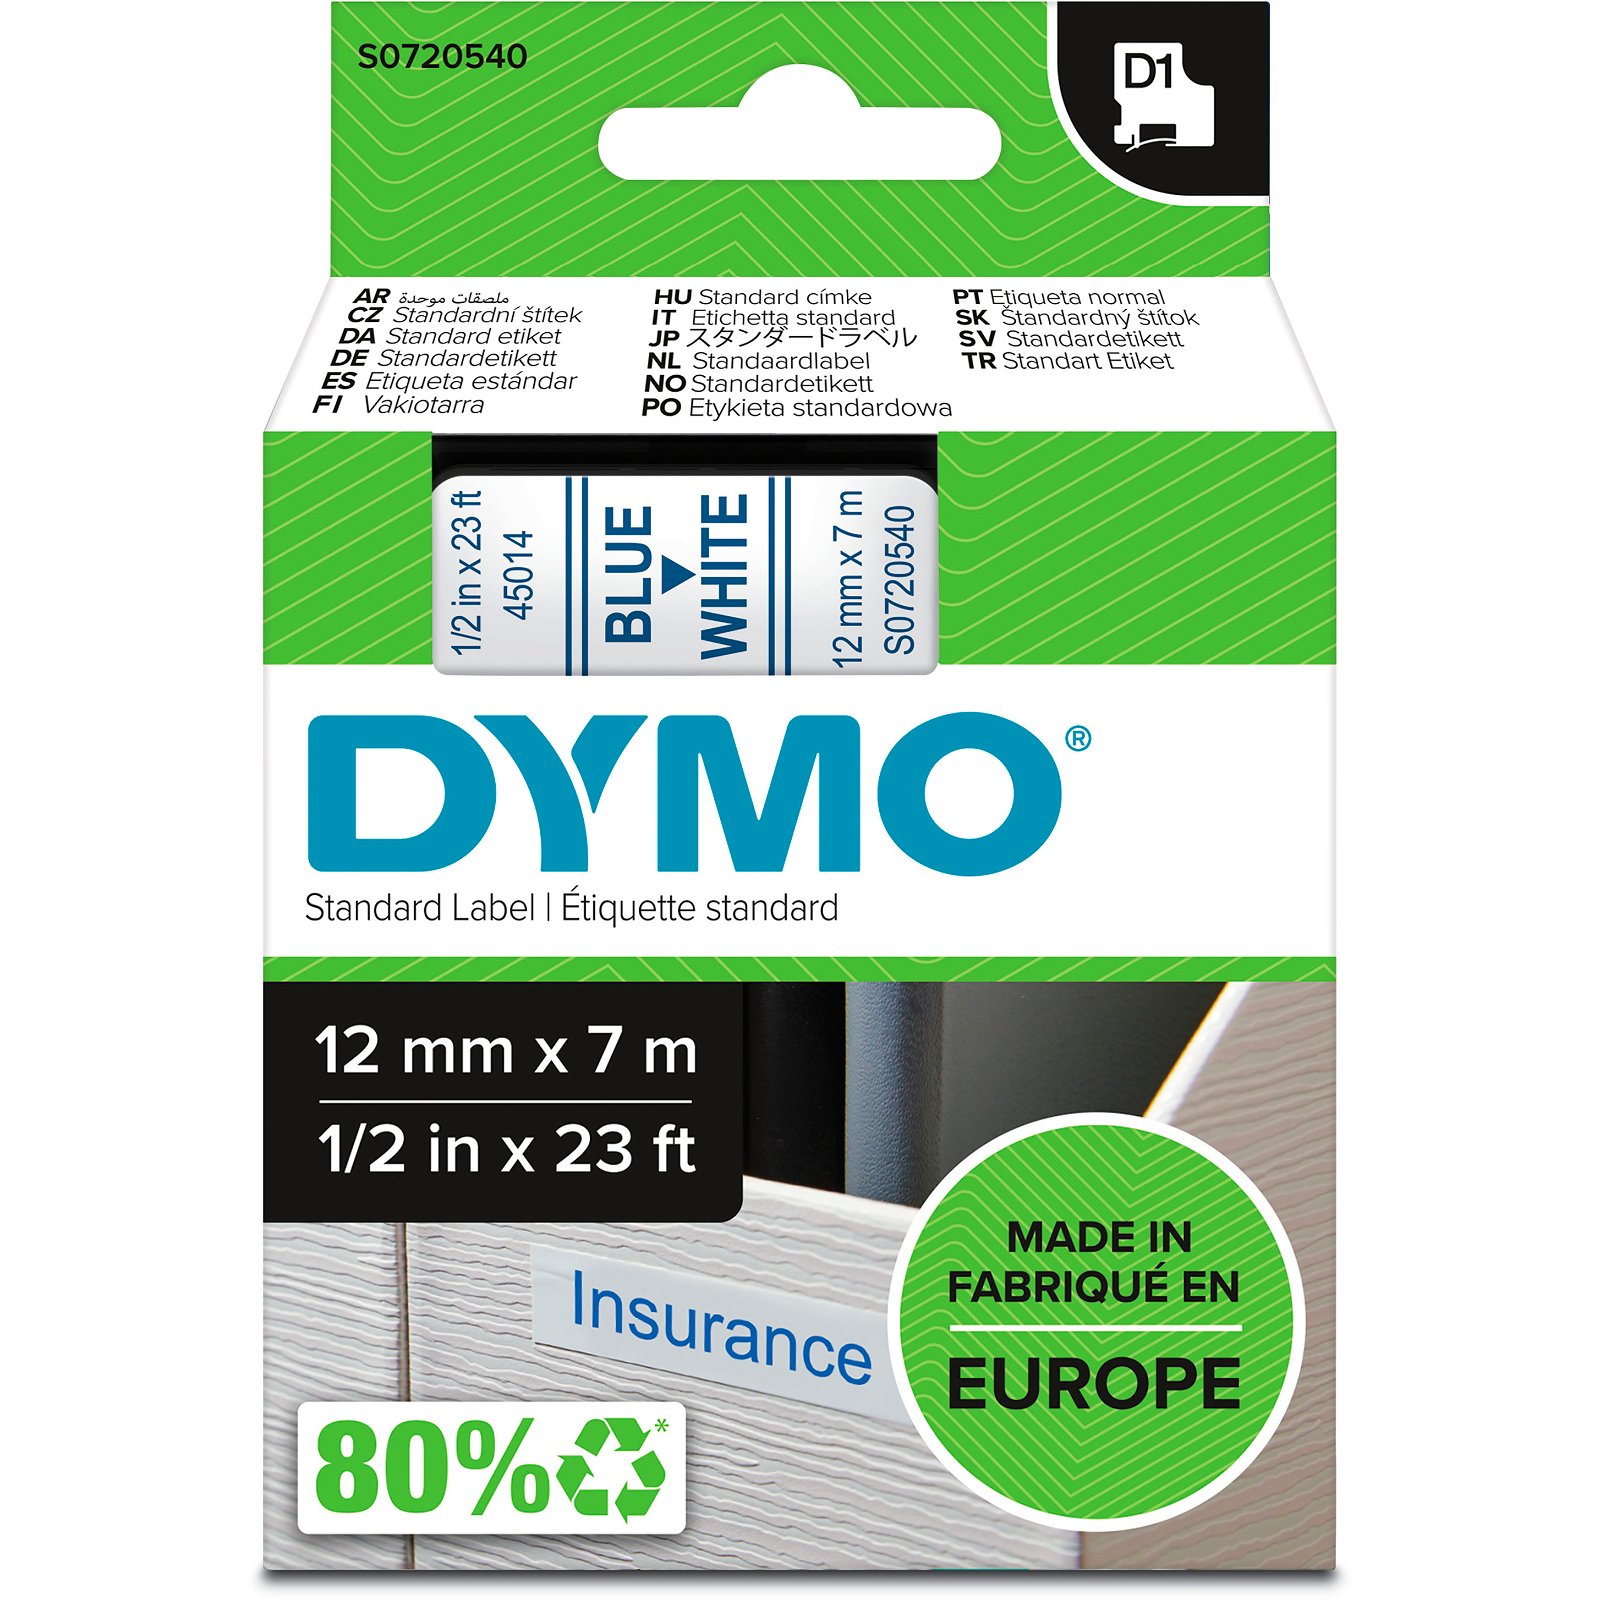 Dymo D1 standard tapekasette 12 mm bla;hvid Polyester